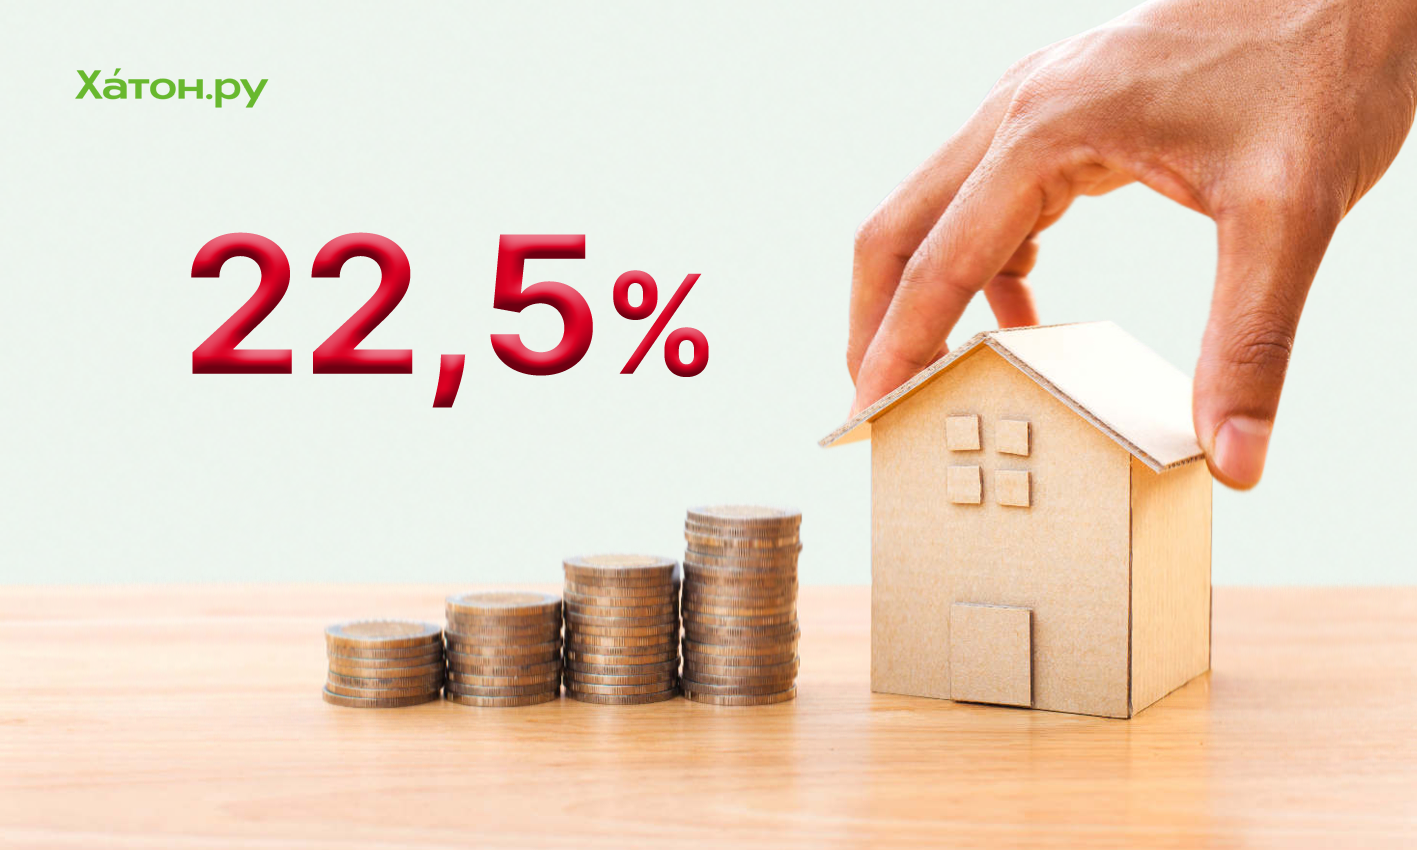 Сбер повысил минимальную ставку по ипотеке до 22,5%